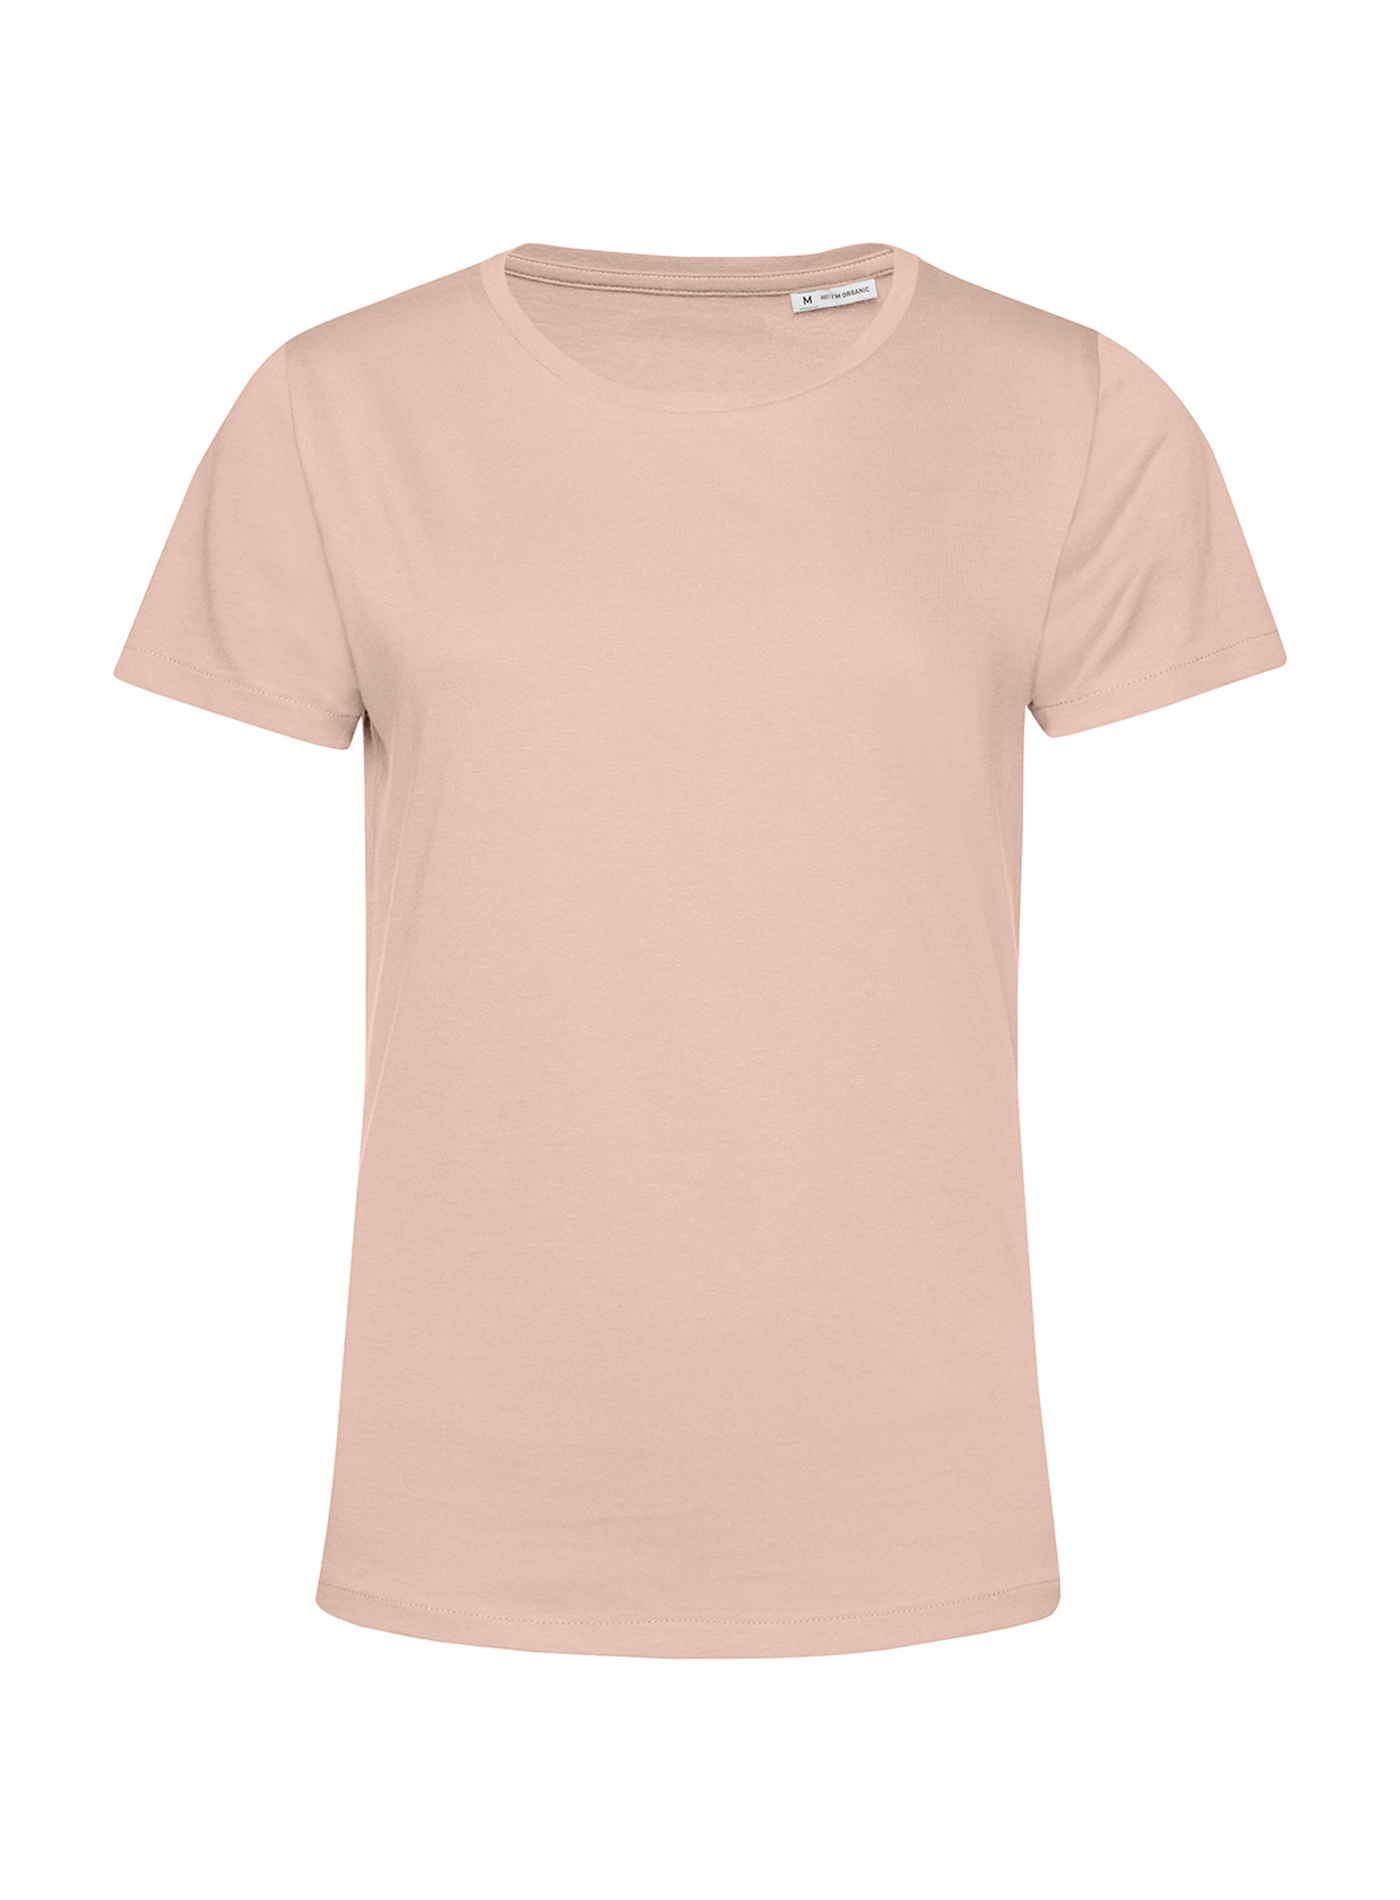 Dámské tričko B&C Collection Organic - Bledě růžová XL